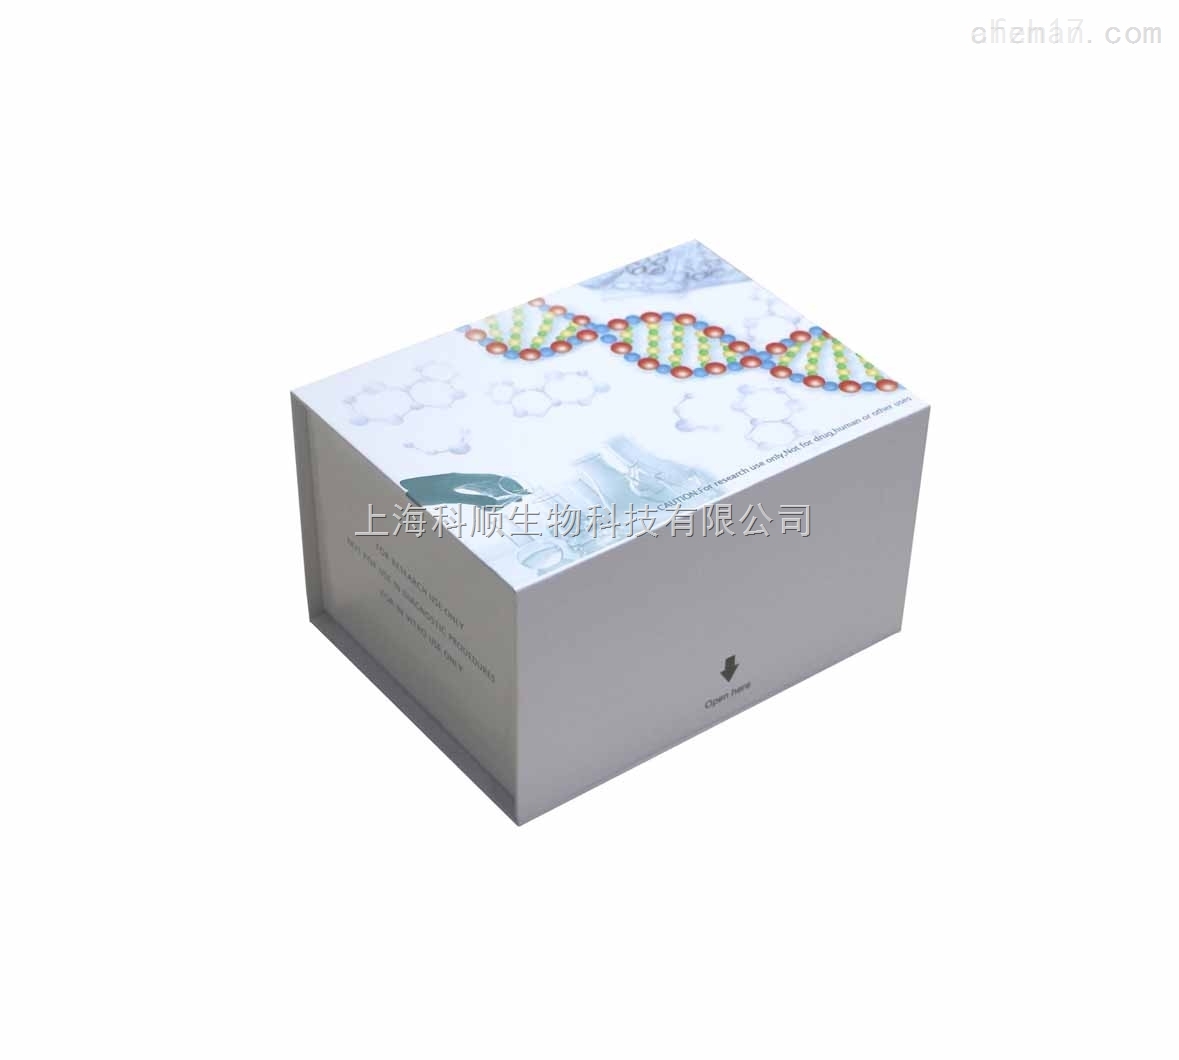 小鼠天然DNA抗体IgM检测试剂盒说明书